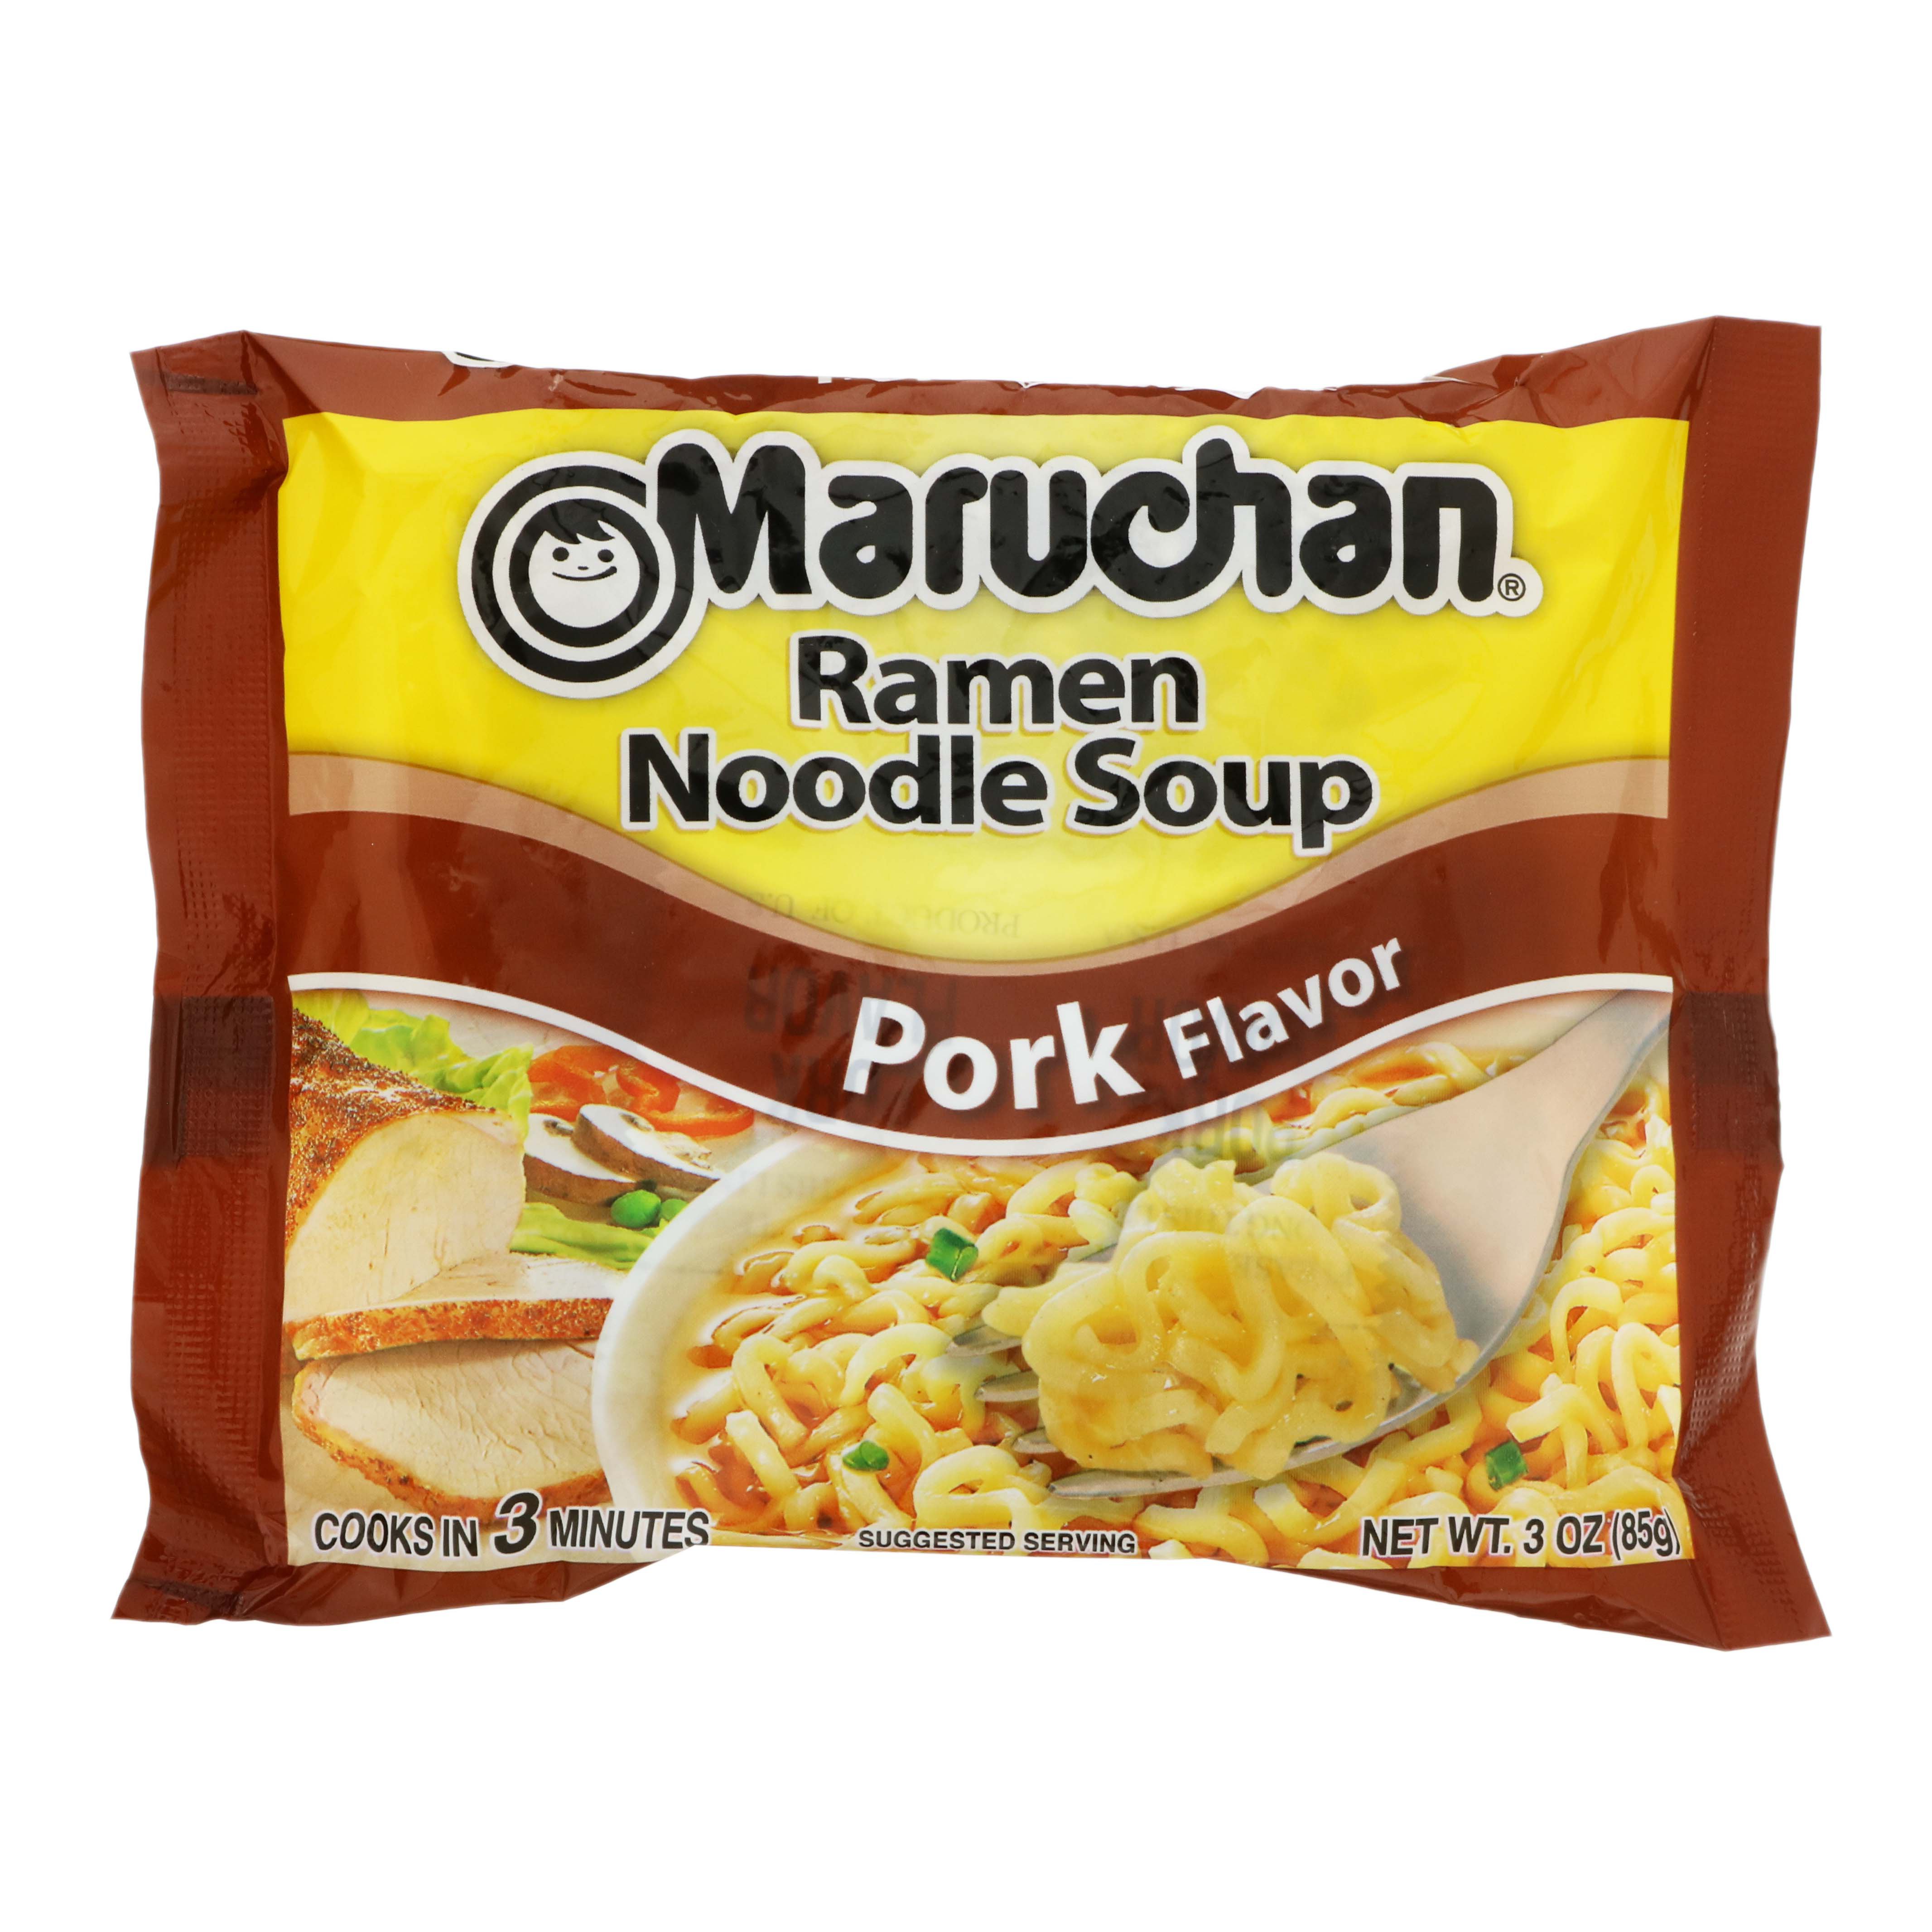 Maruchan Pork Flavor Ramen Noodle Soup Shop Soups Chili At H E B